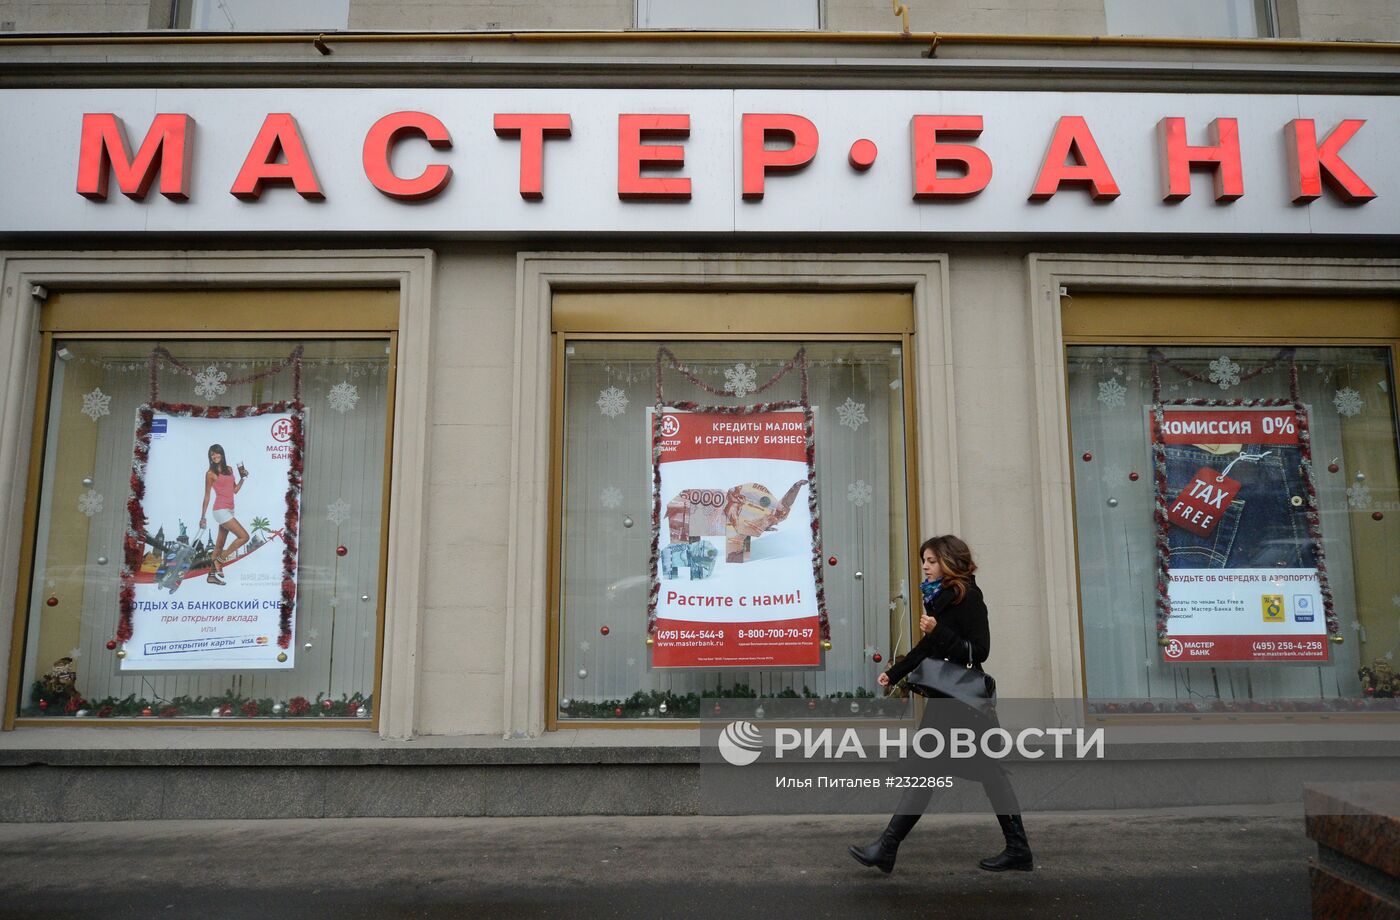 Центробанк России отозвал лицензию у Мастер-банка